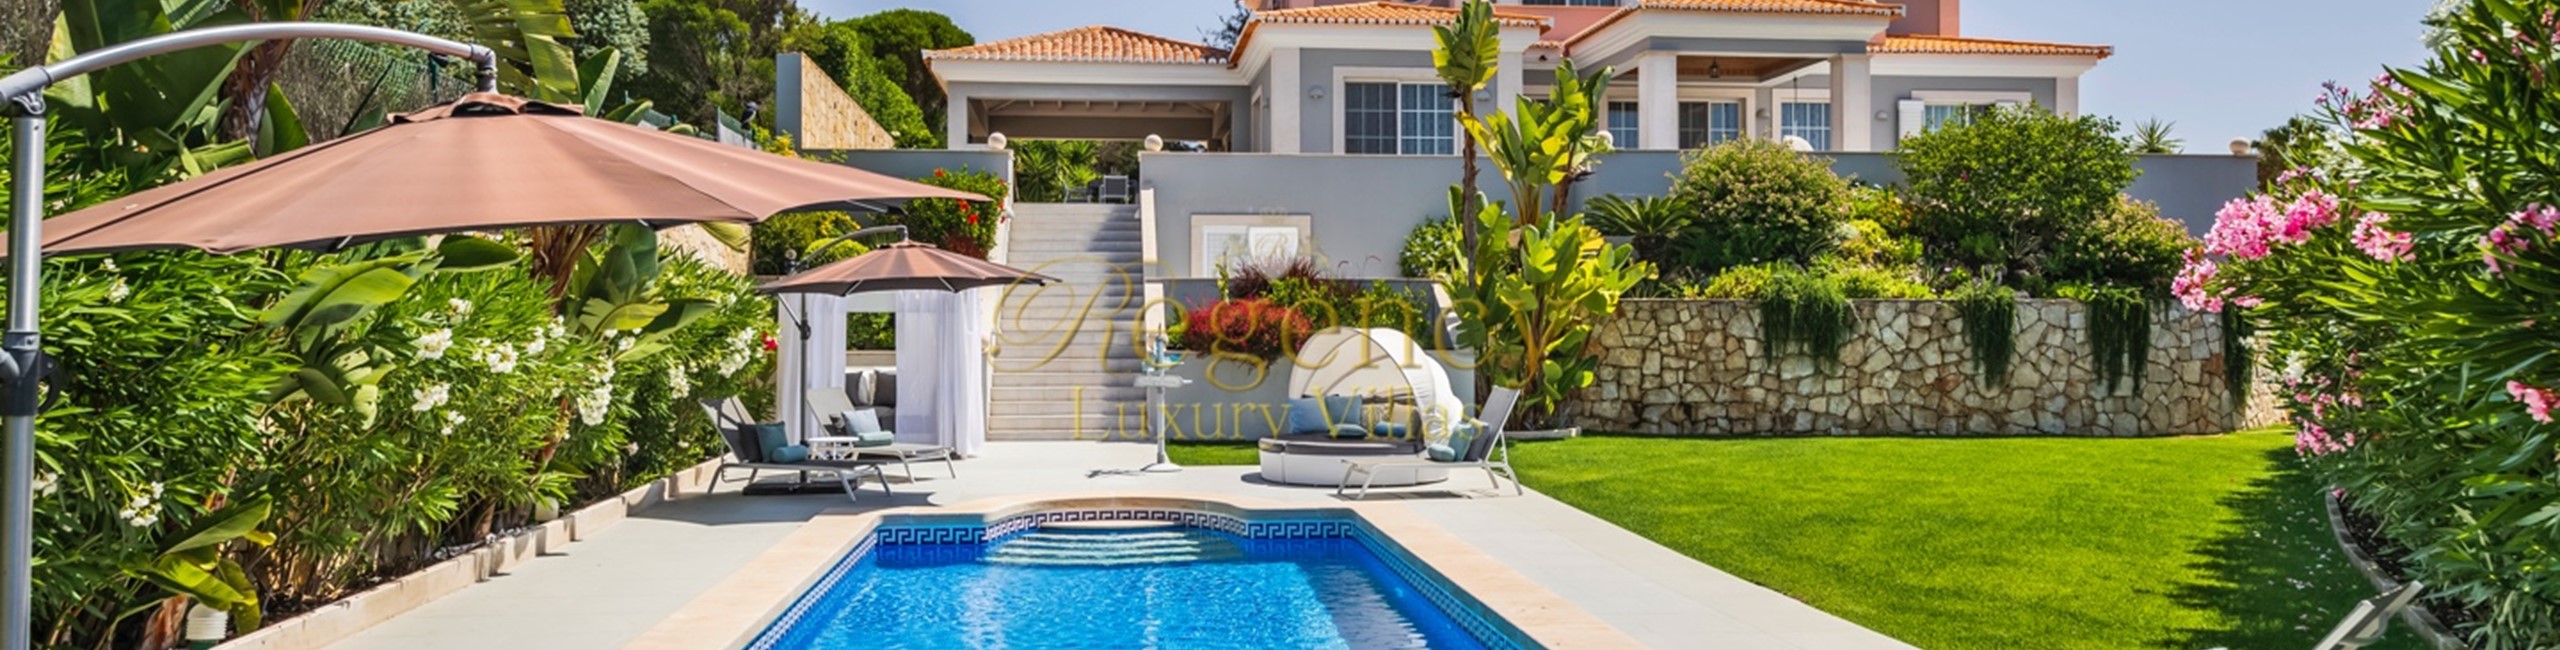 Villa To Rent In Quinta Do Lago Near Golf Course